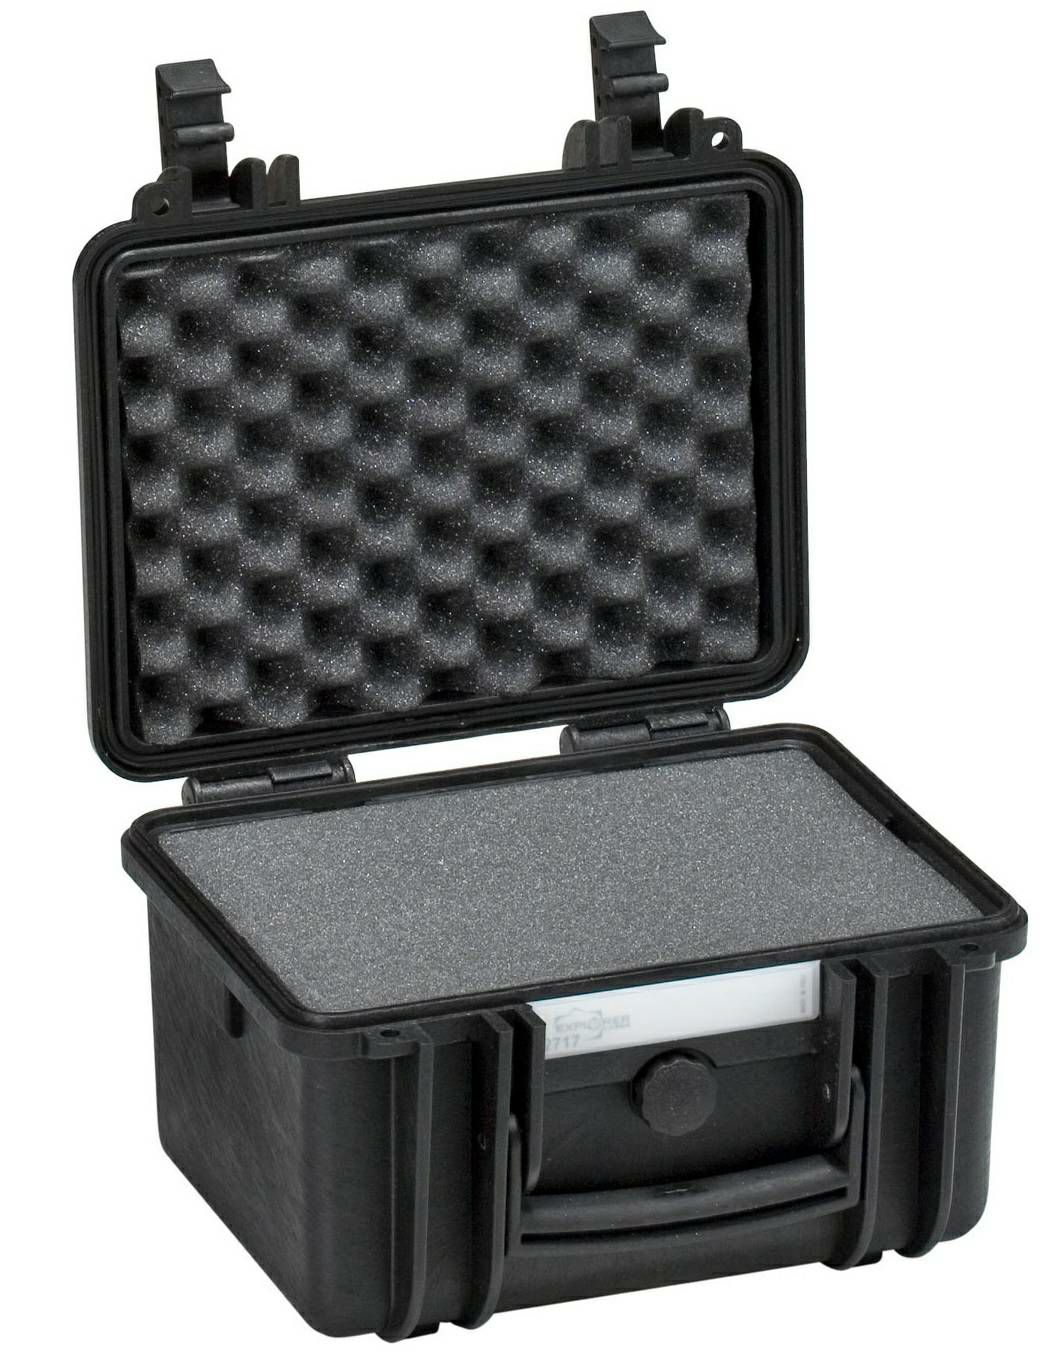 Explorer Cases 2717 Black Foam 305x270x194mm kufer za foto opremu kofer Camera Case